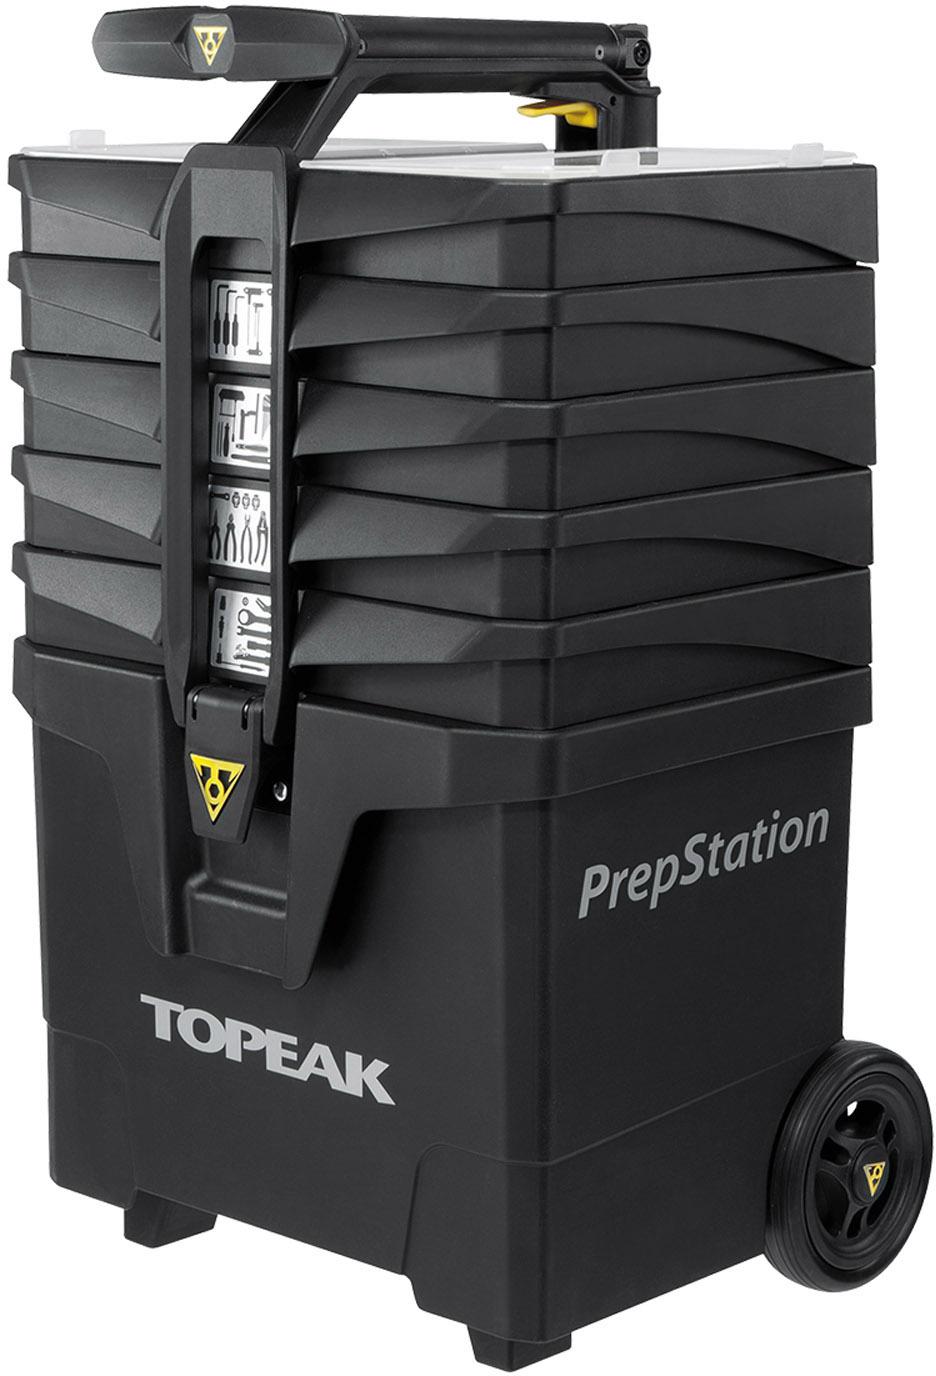 Topeak Prepstation 52 Piece Toolkit - Black